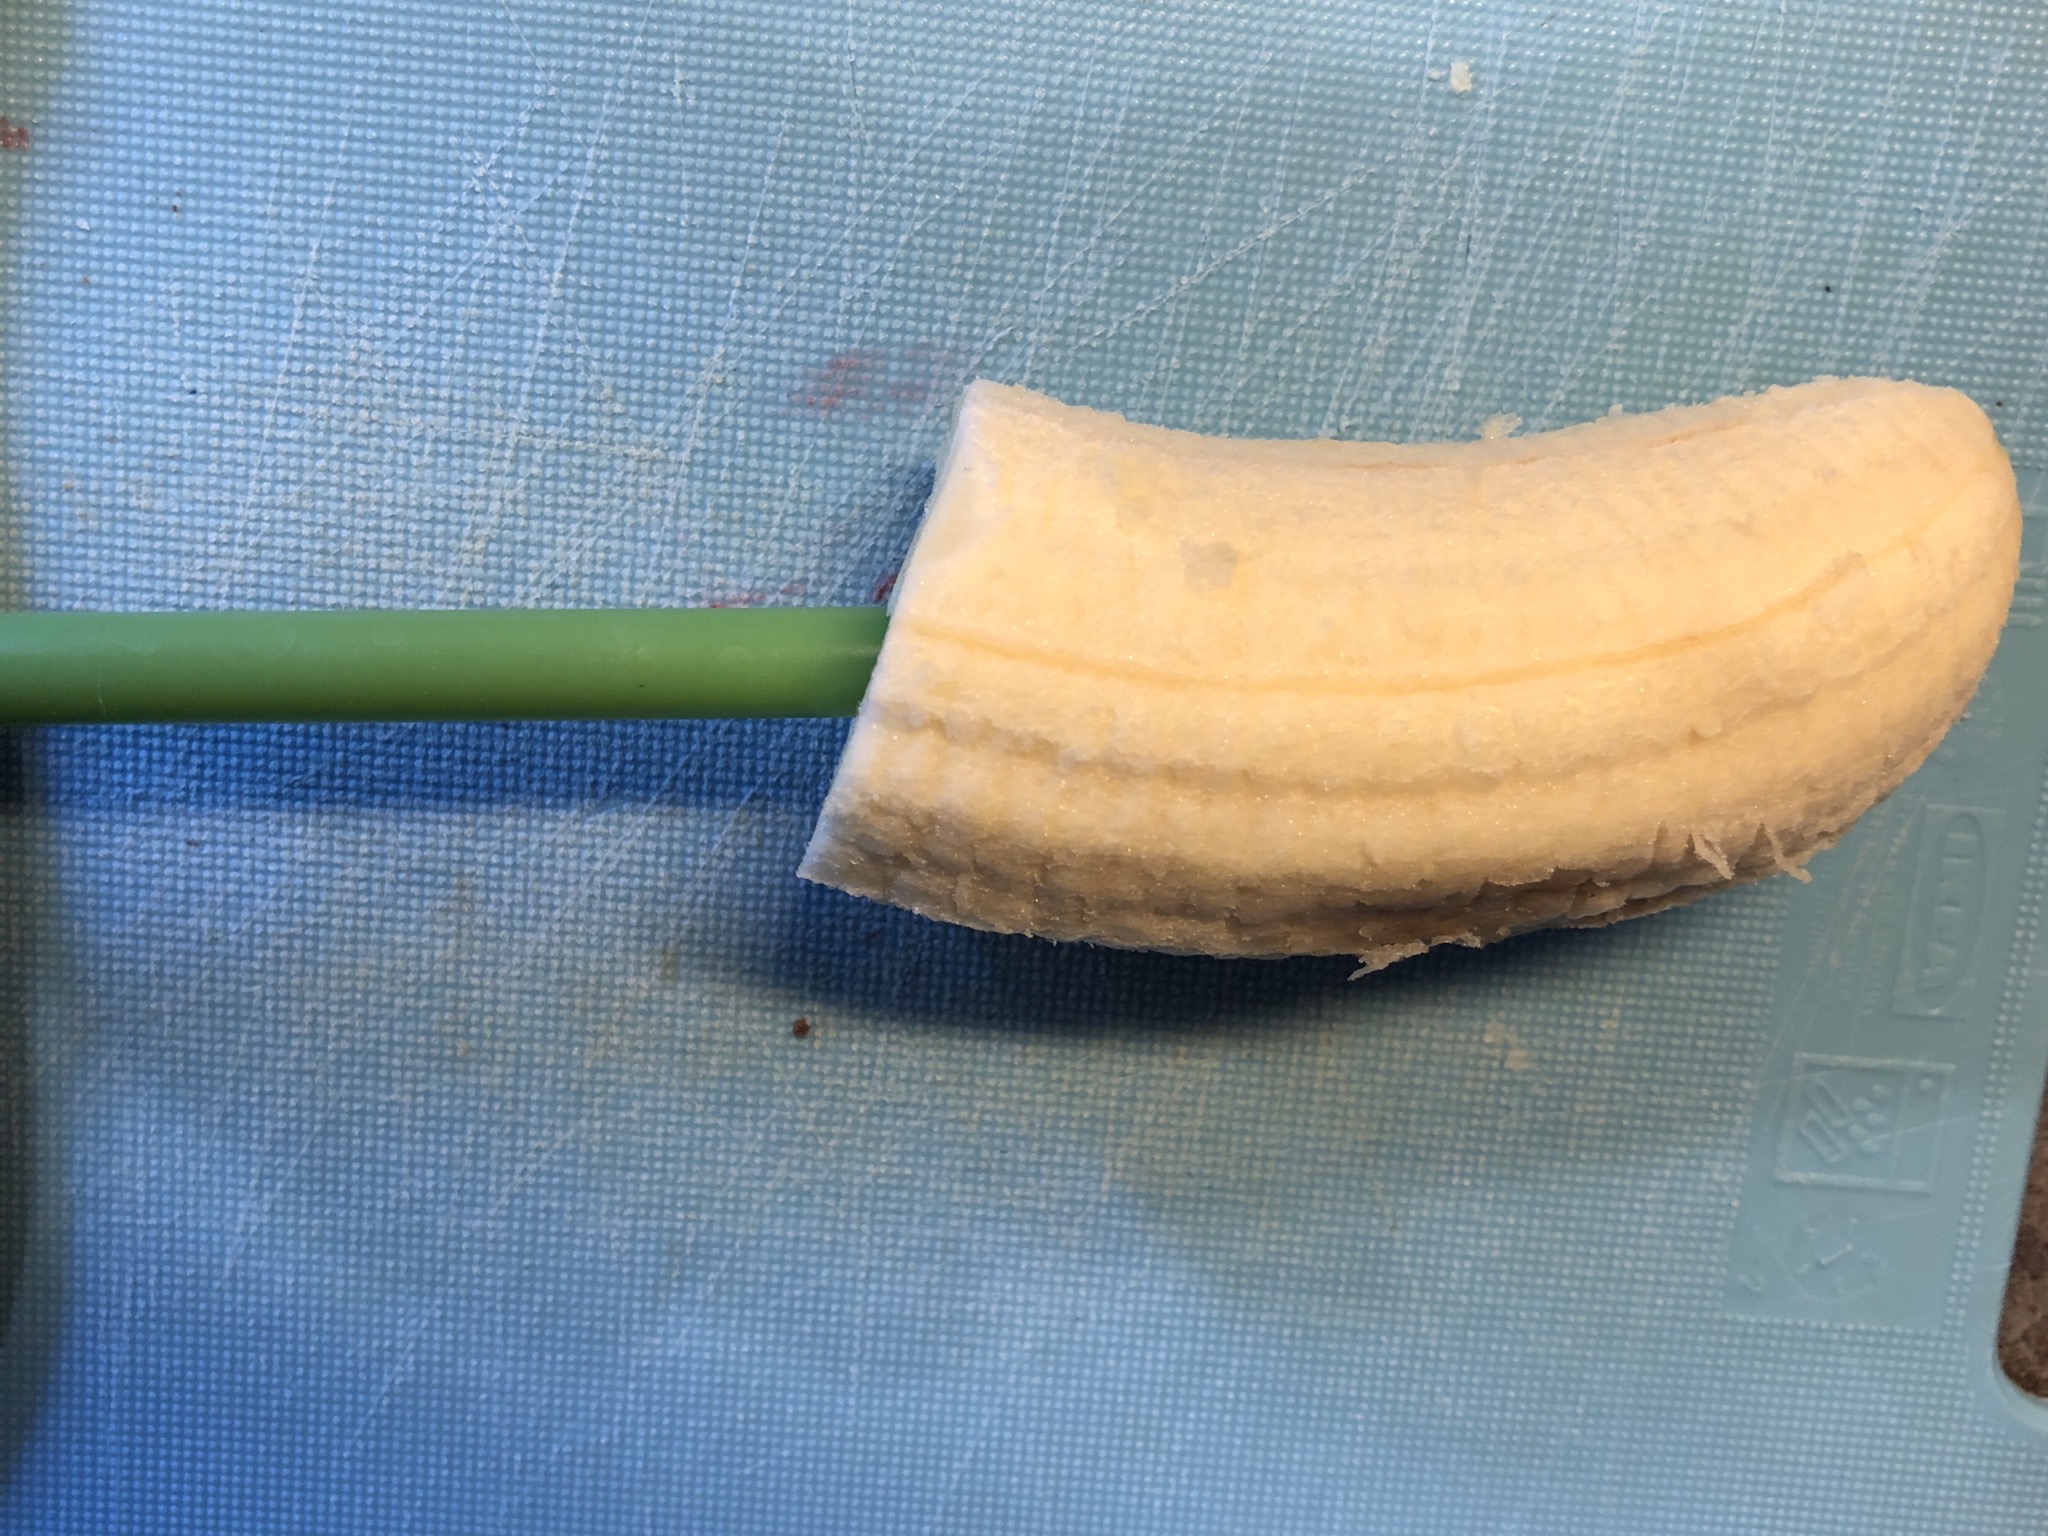 Bild zum Schritt 3 für das Bastel- und DIY-Abenteuer für Kinder: 'Banane auf ein Kunststoffröhrchen aufstecken.'